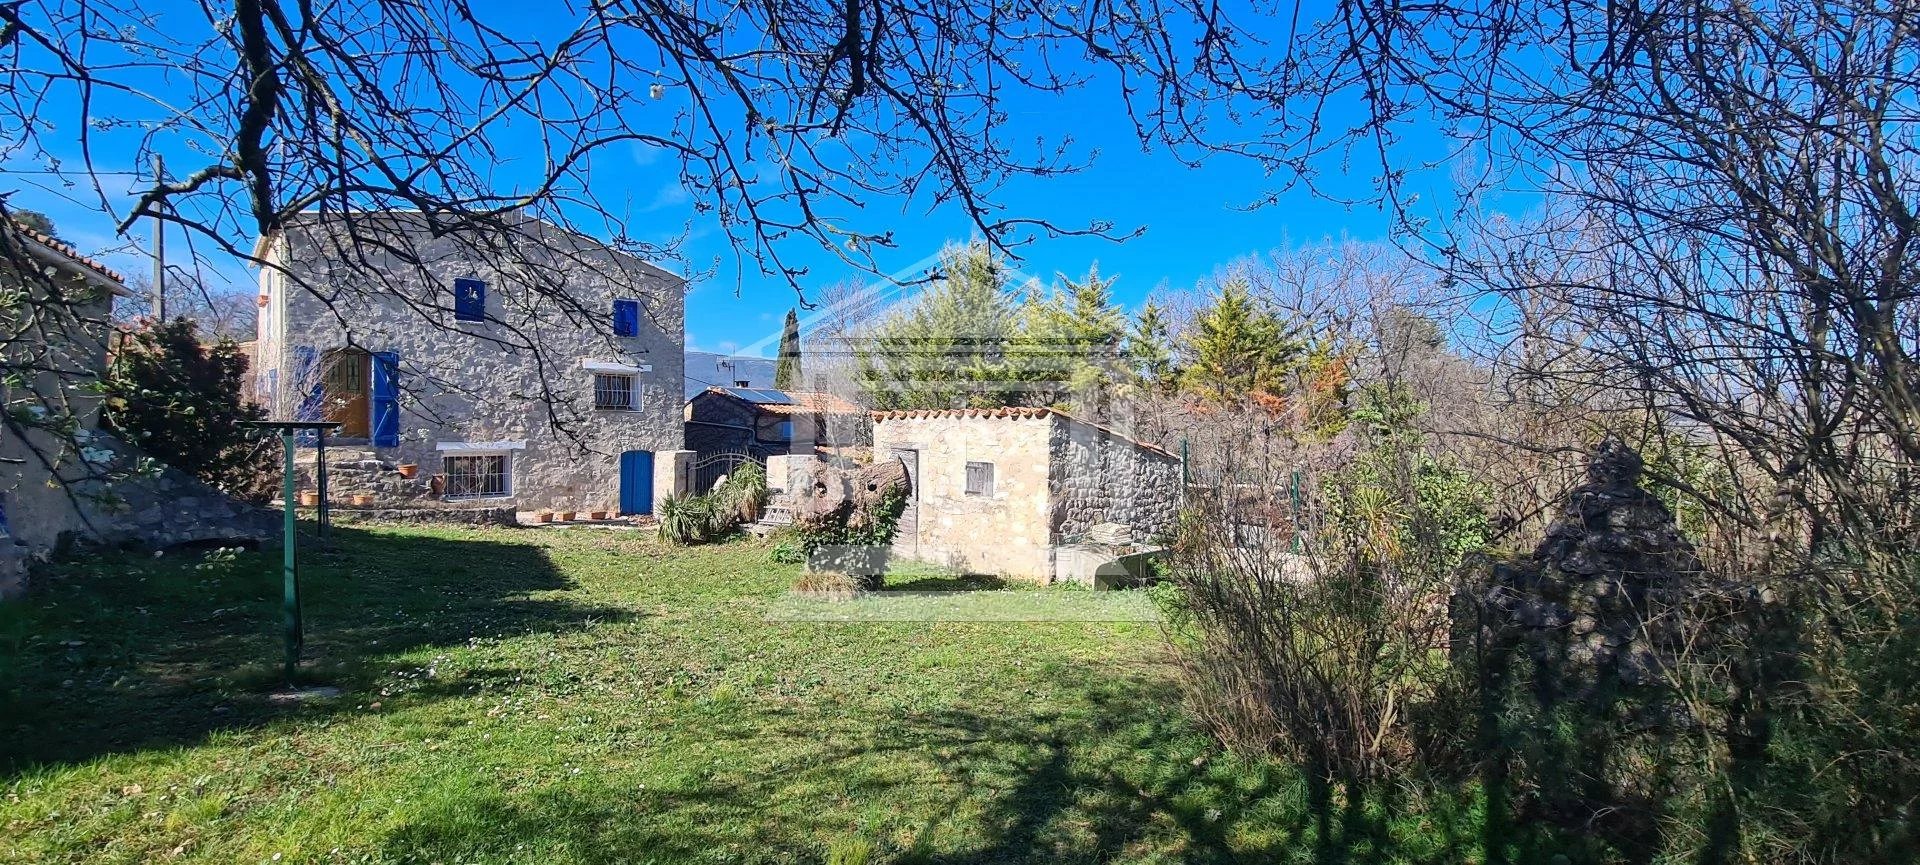 Stone villa